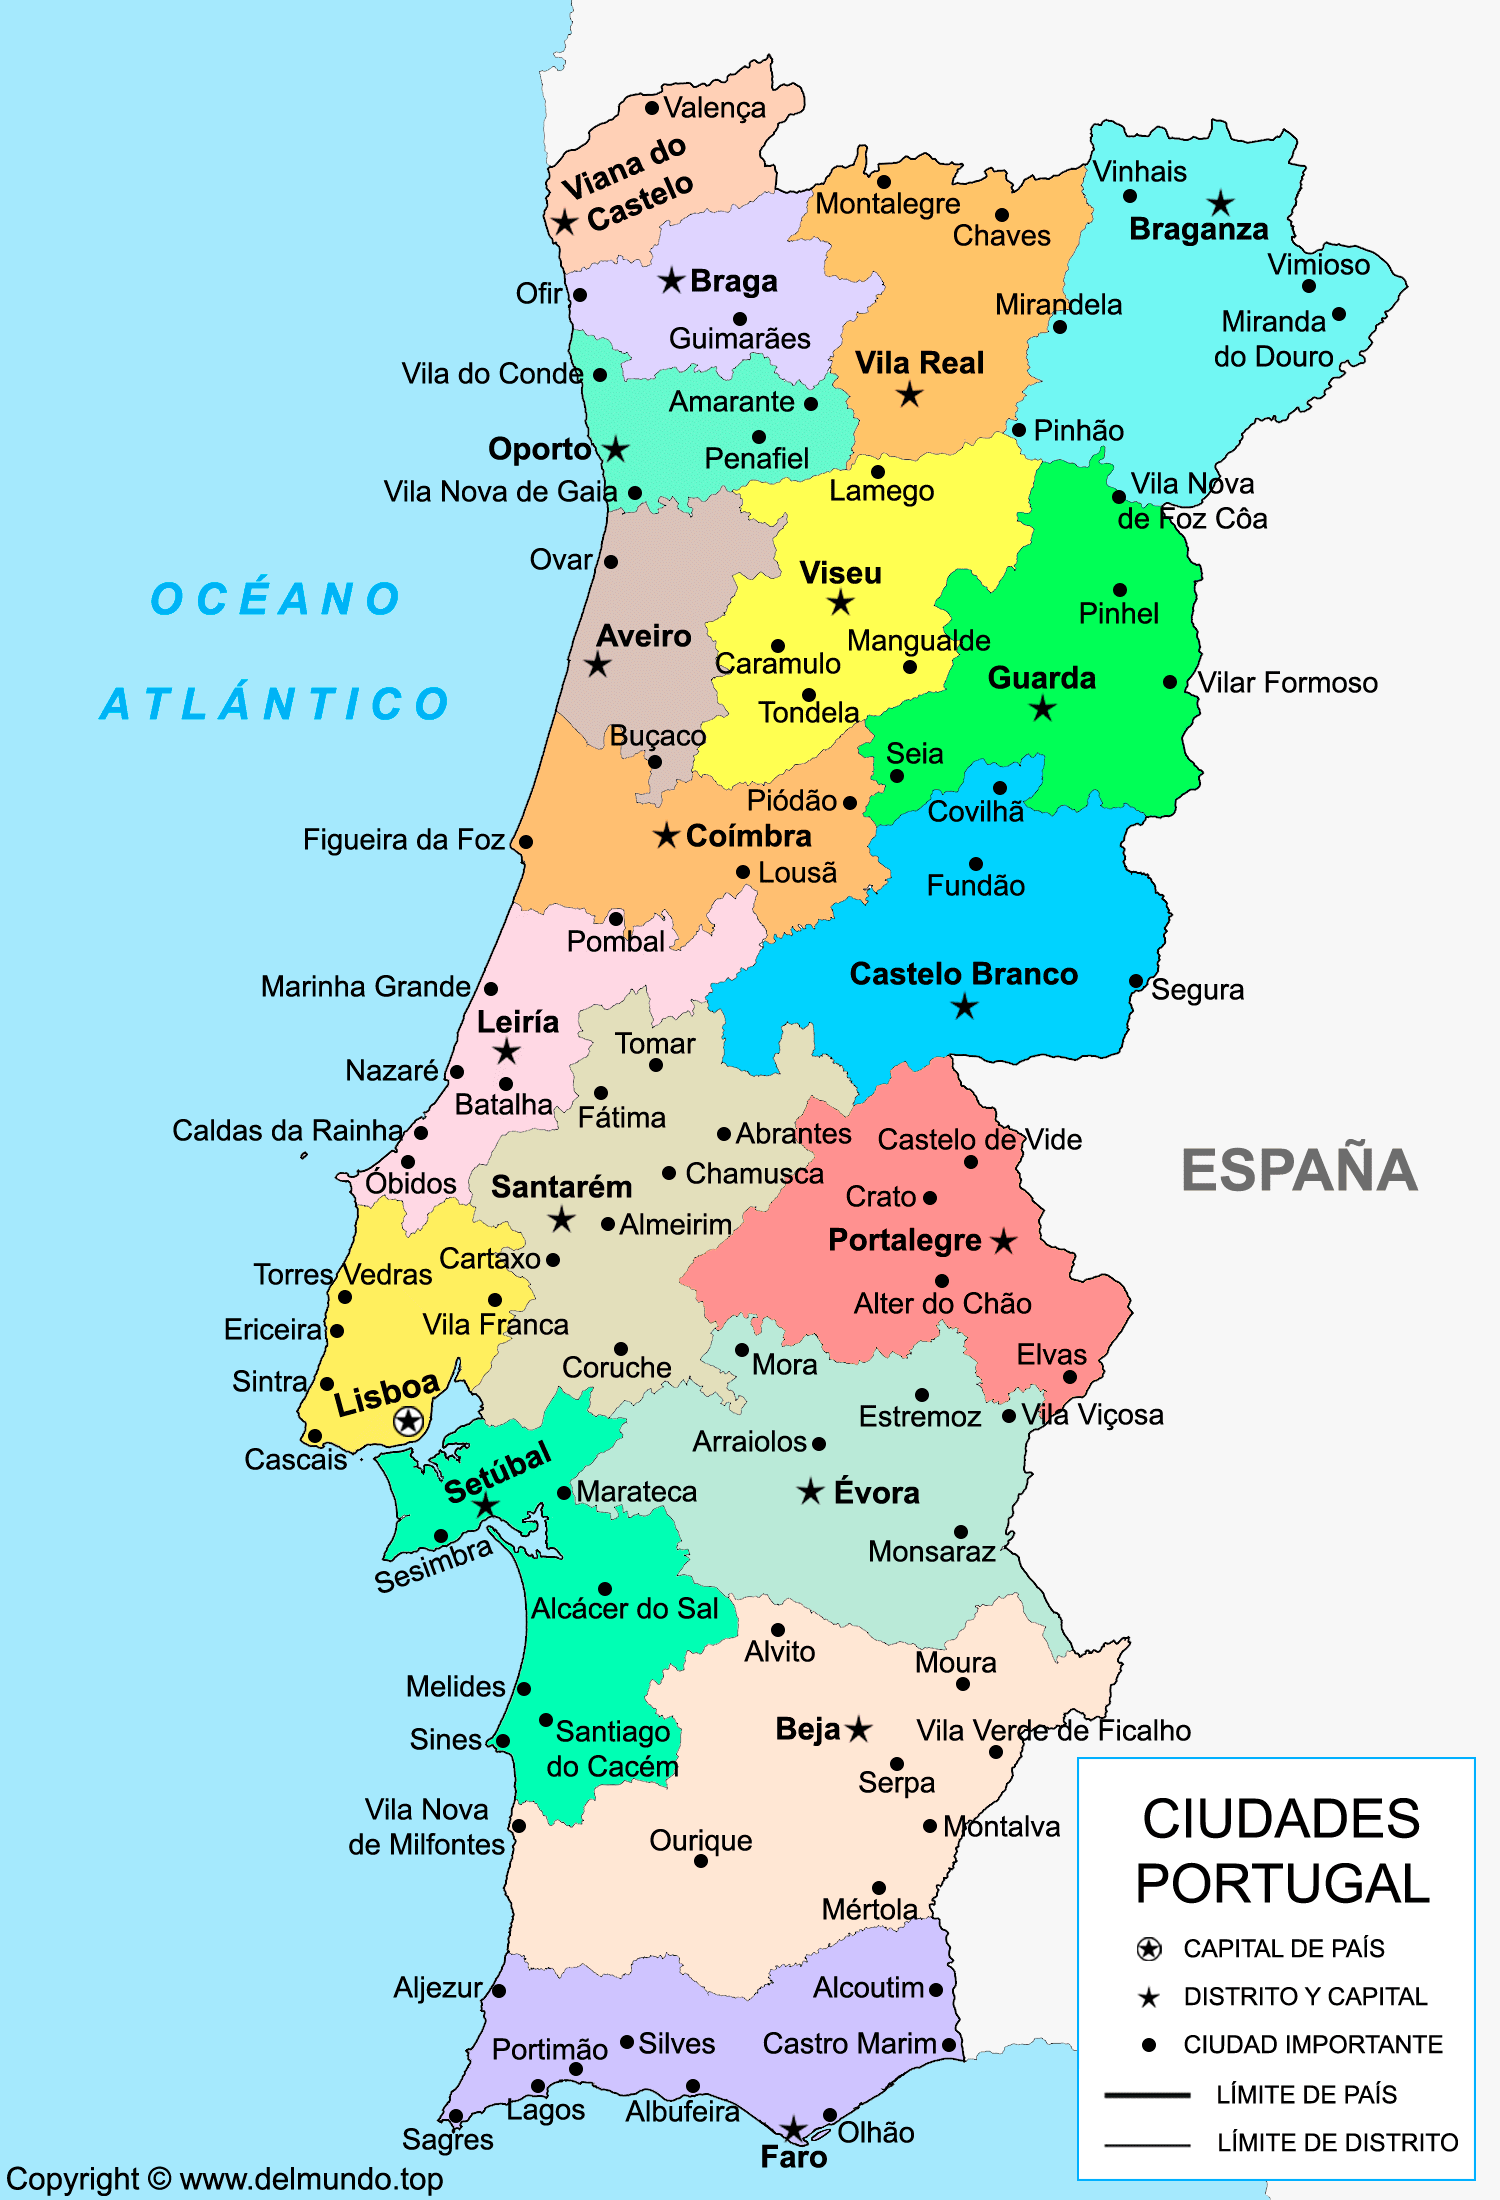 Mapa de las ciudades de Portugal